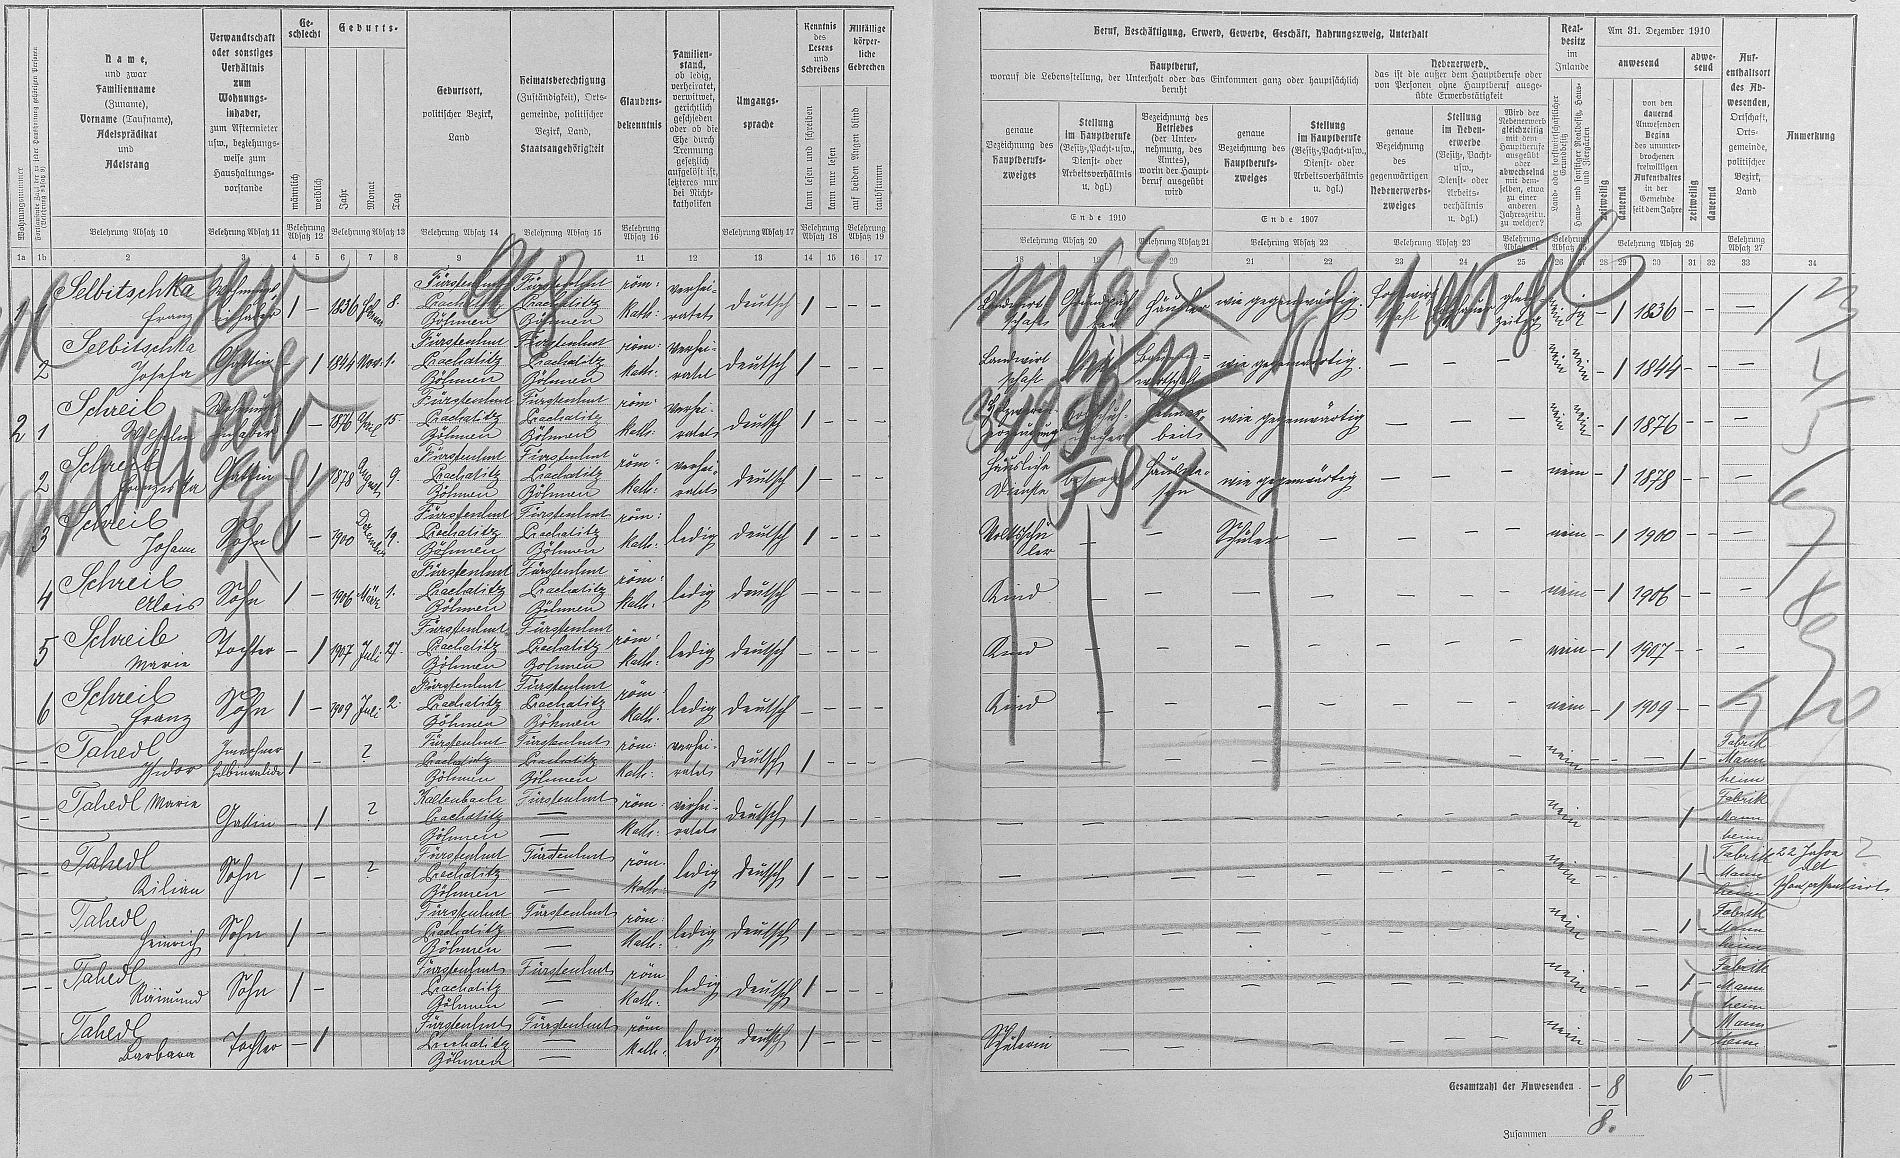 Arch sčítání lidu z roku 1910 pro stavení čp. 39 na Knížecích Pláních, kde bydleli prarodiče Selbitschkovi, rodina Schreibova i s budoucí Wastlovou nevěstou Marií a také rodina "polovičního invalidy" Tahedla